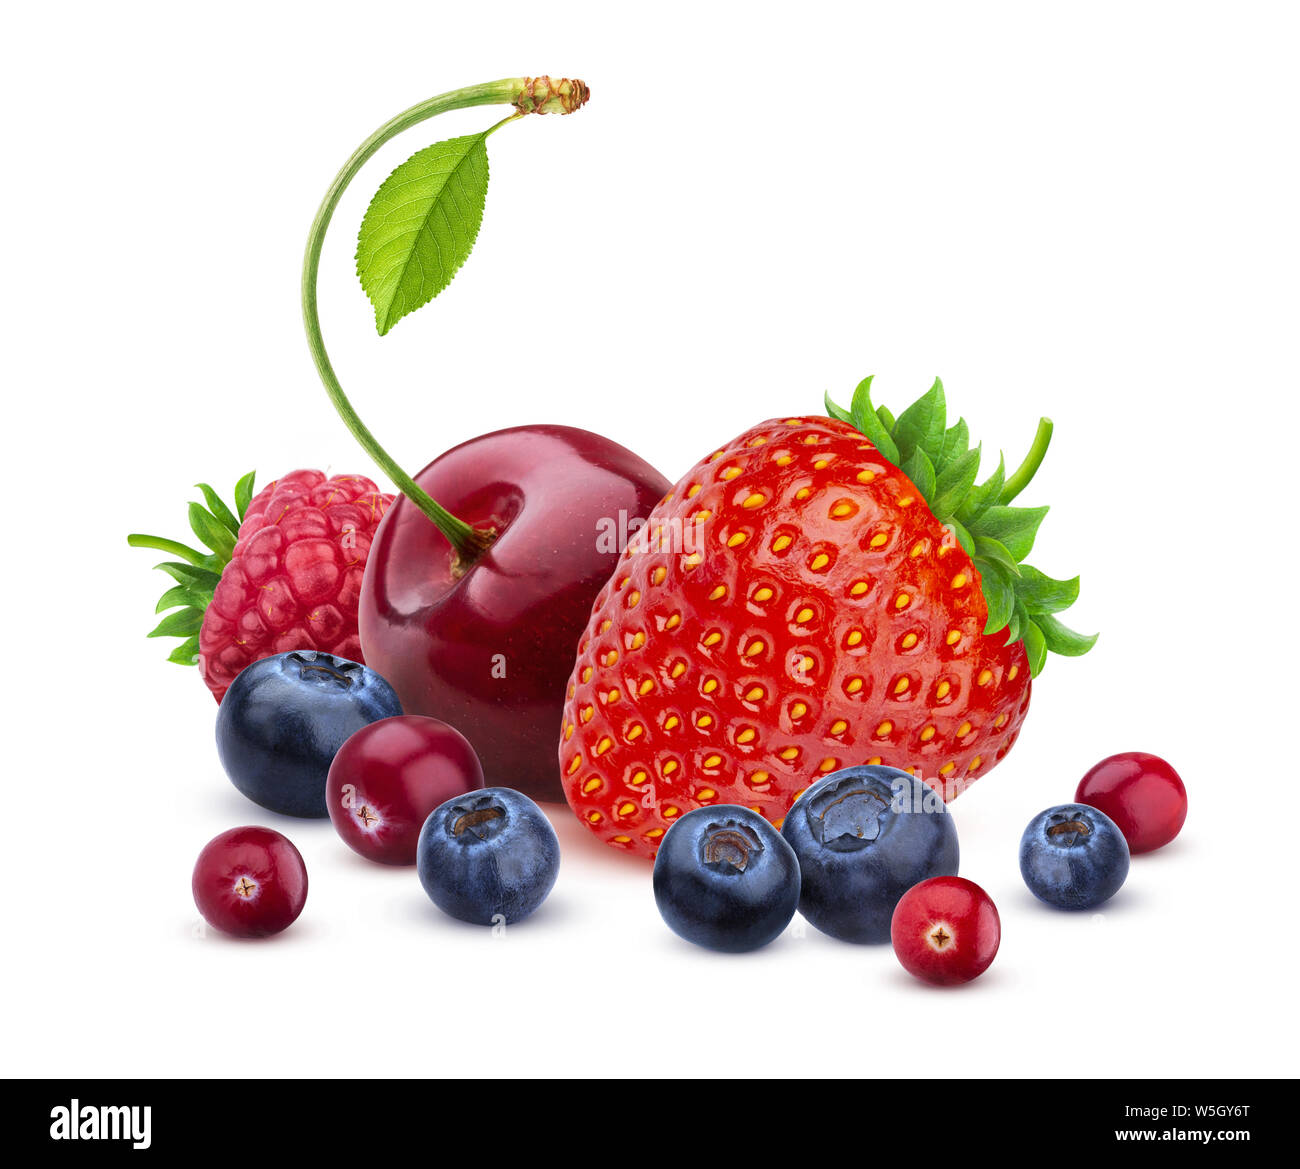 Berry mix isolati su sfondo bianco, la pila di prodotti freschi frutti di bosco Foto Stock